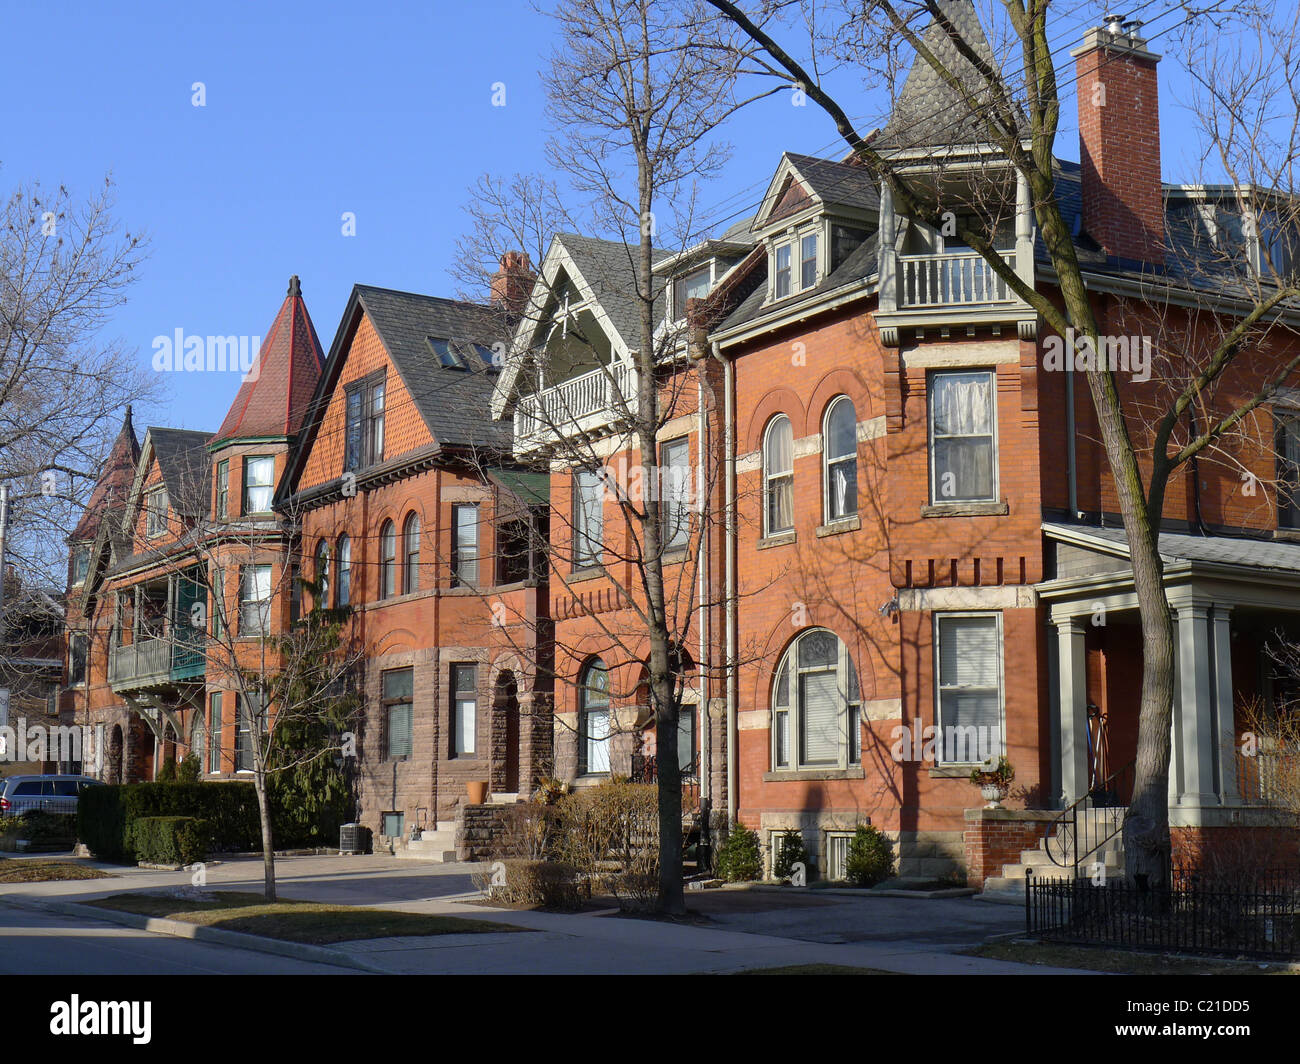 Grandi vecchie case in stile vittoriano nel centro cittadino di Toronto Foto Stock